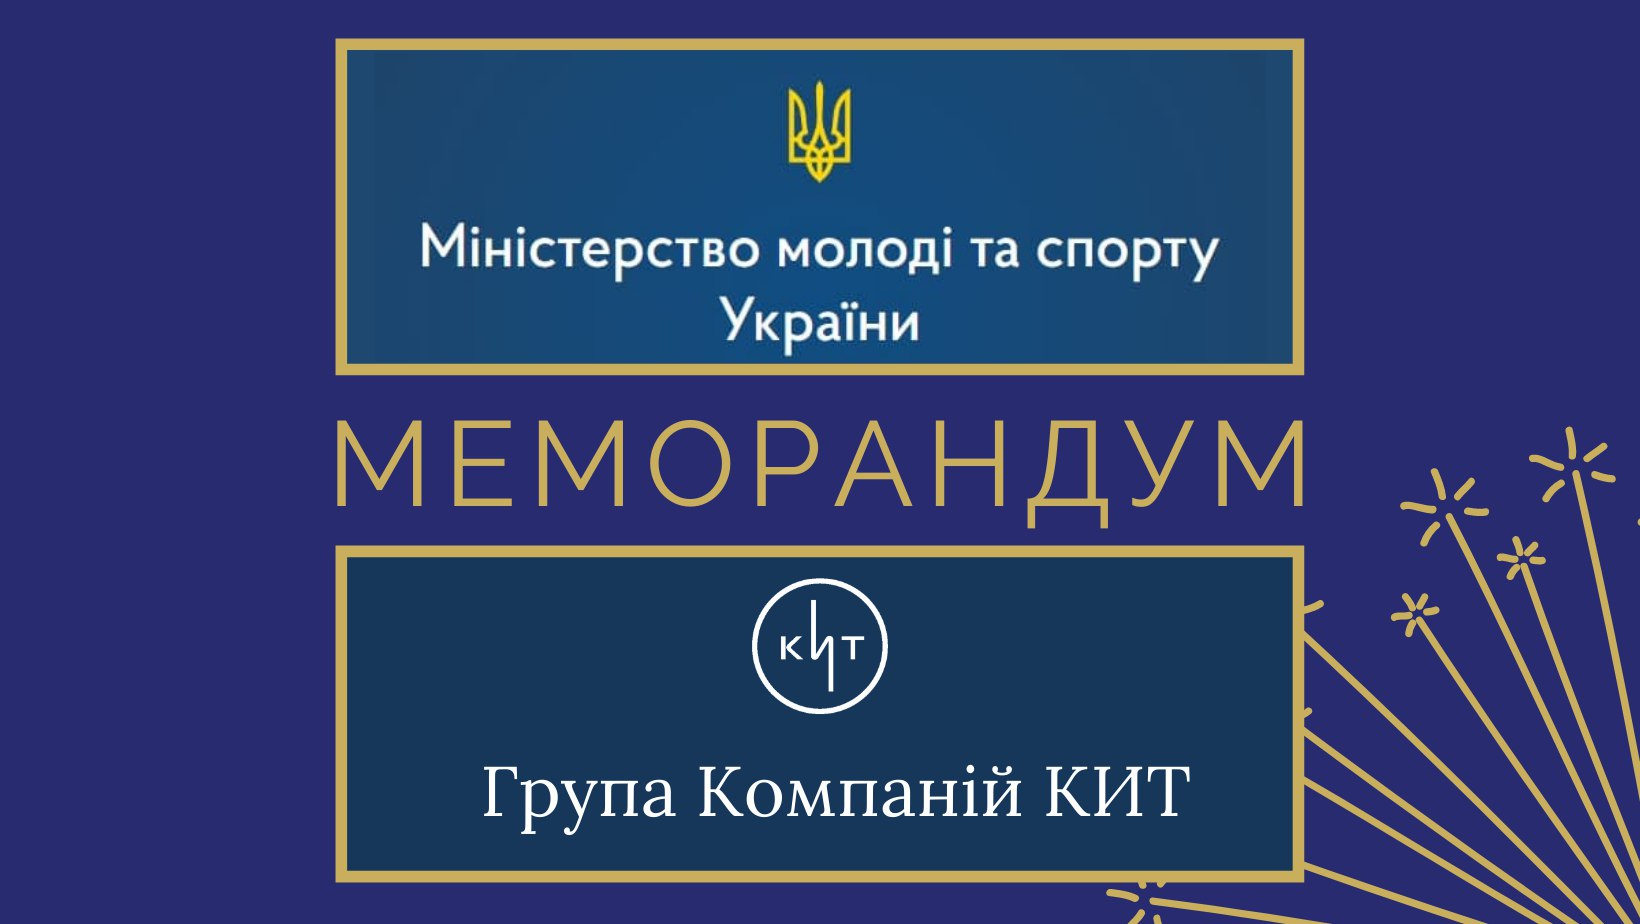 Група компаній КИТ уклала Меморандум із Міністерством молоді та спорту України